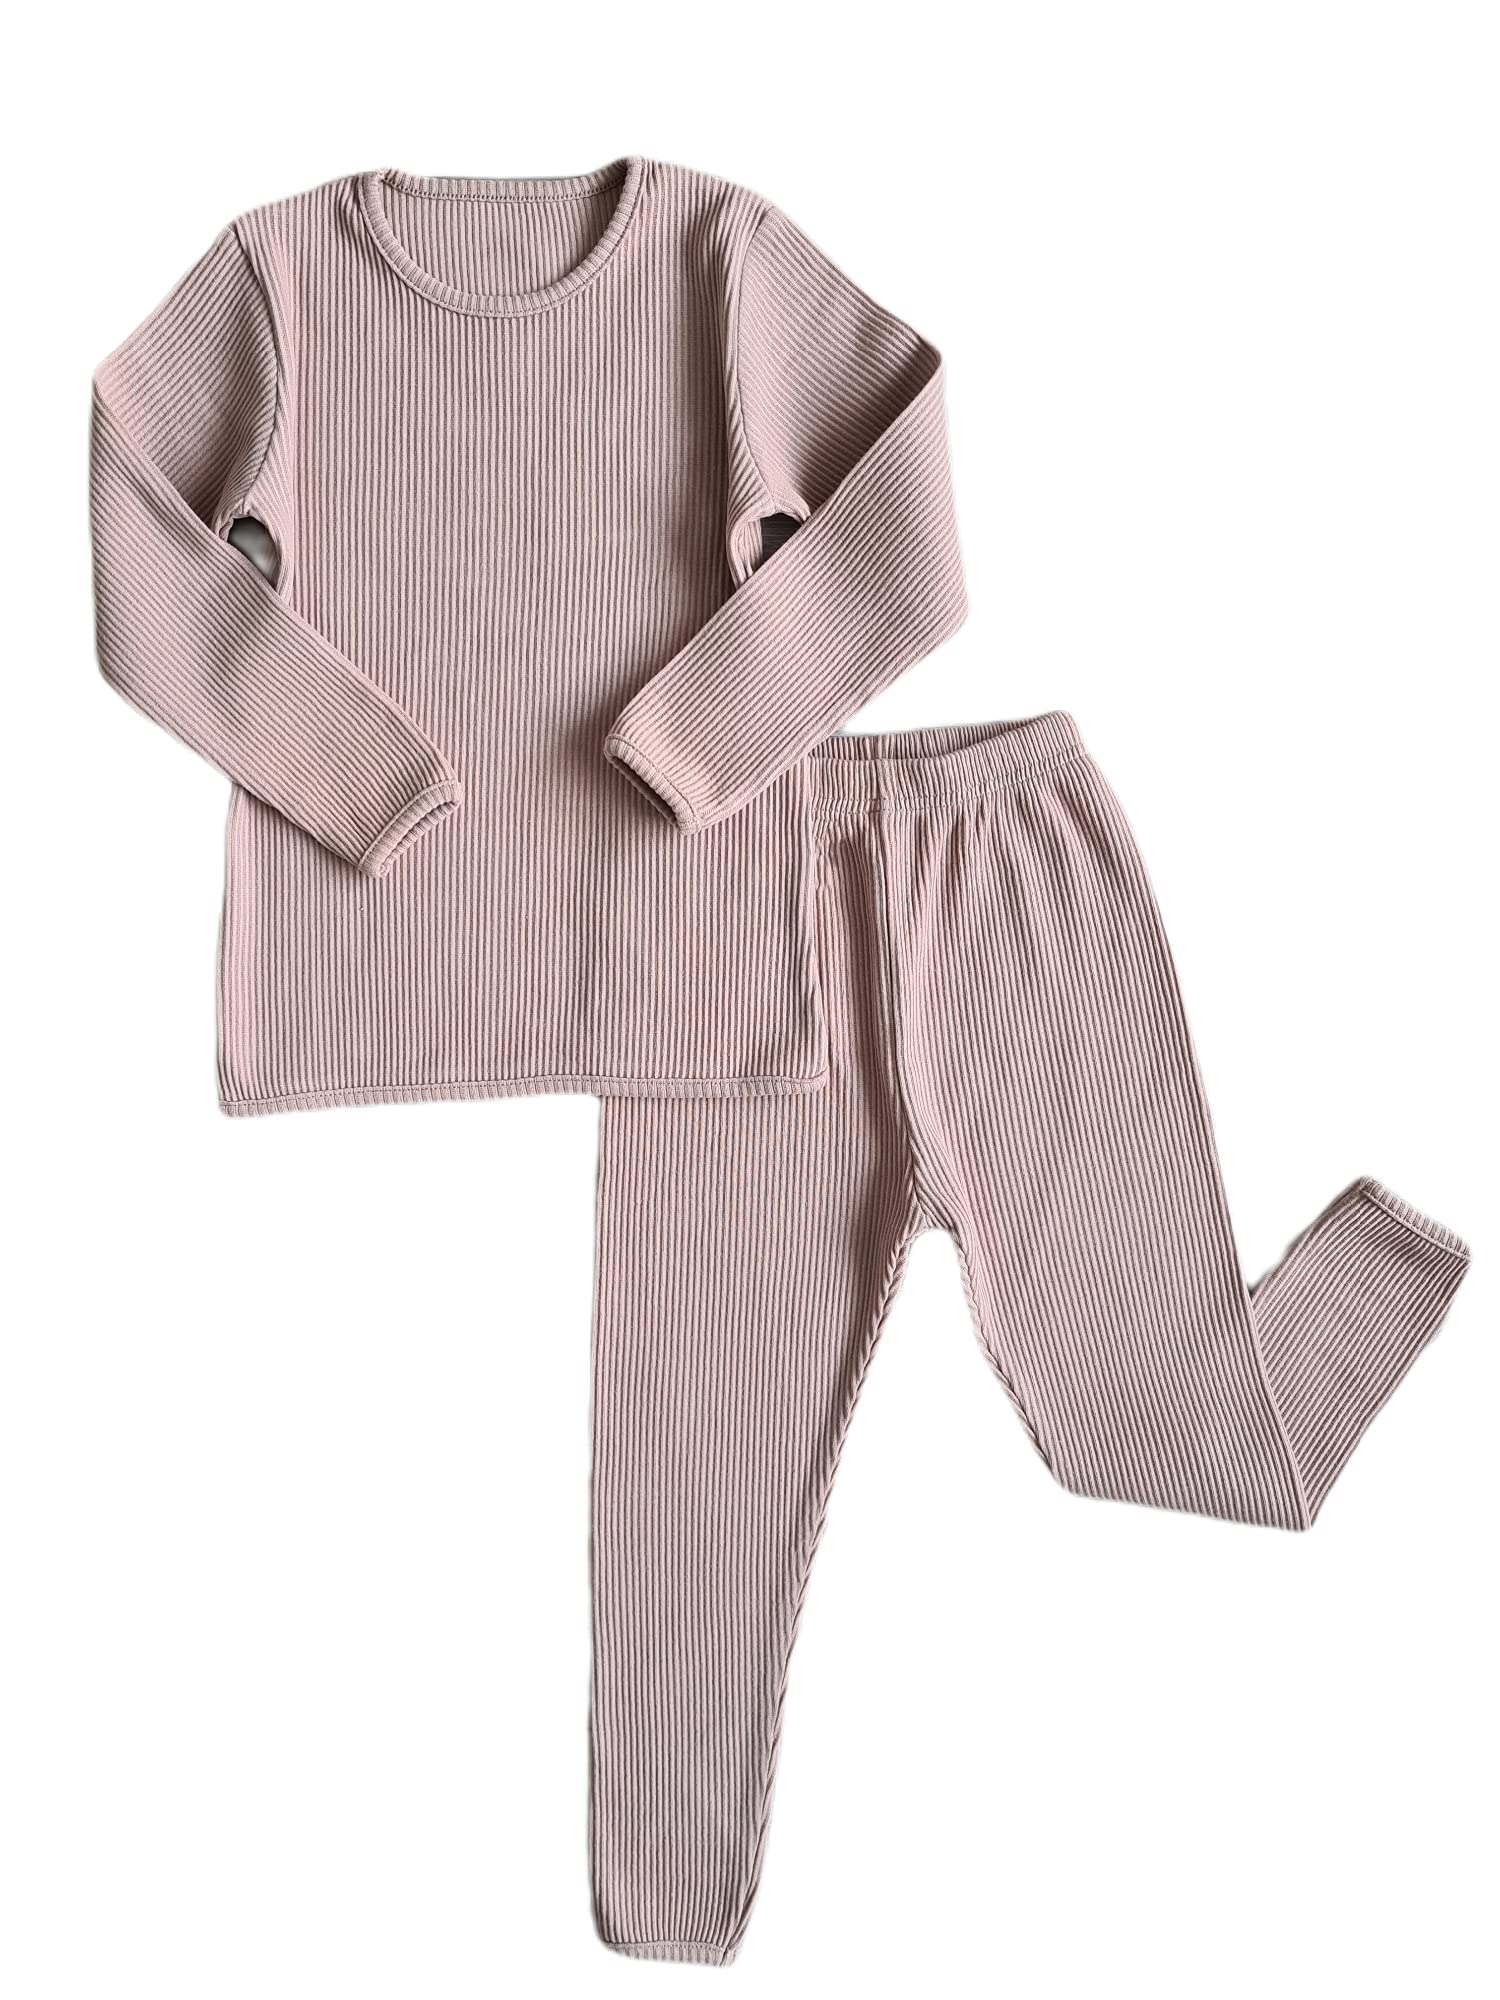 DreamBuy 20 Farben Gerippter Pyjama/Trainingsanzug/Loungewear Unisex Jungen und Mädchen Pyjamas Babykleidung Pyjamas für Damen und Herren Pyjamas (Samtmokka, XXL)